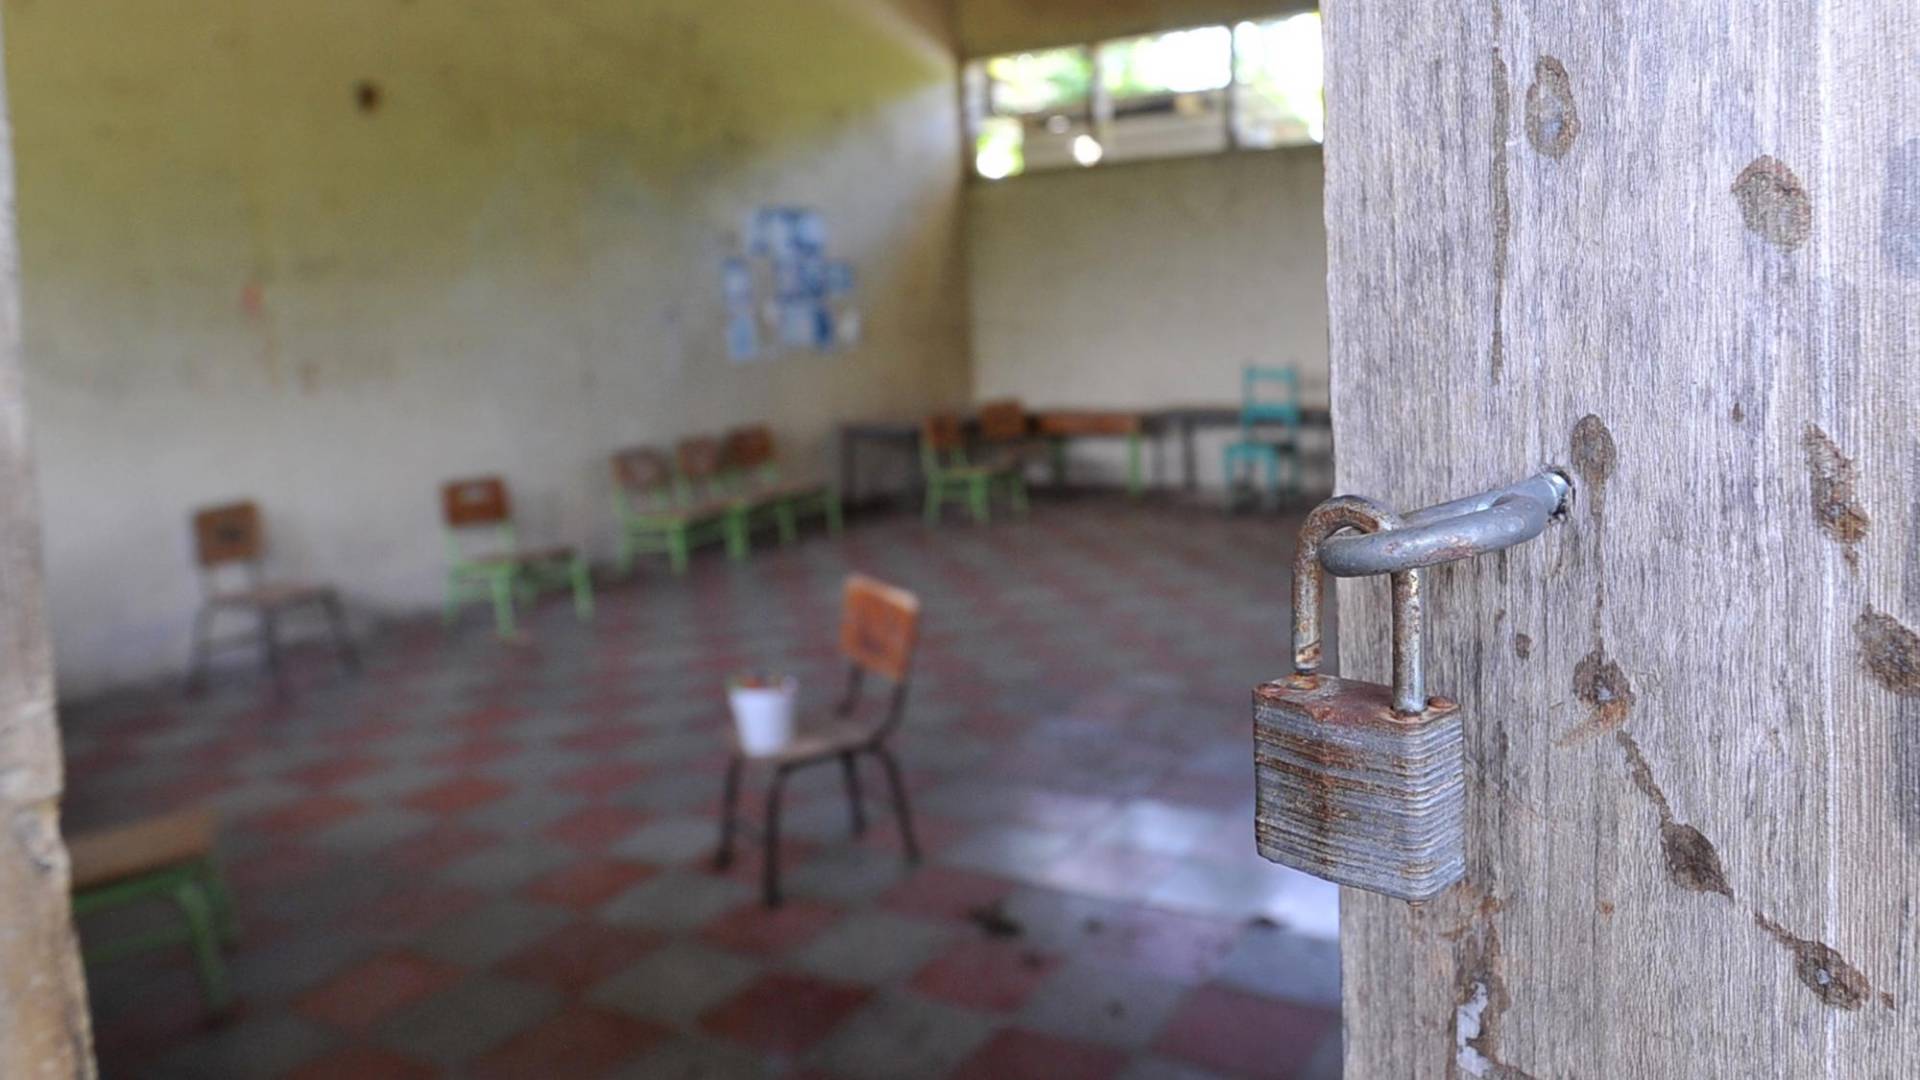 $!Las aulas de algunos centros educativos están completamente abandonadas. En muchos casos se debe a la falta de estudiantes.